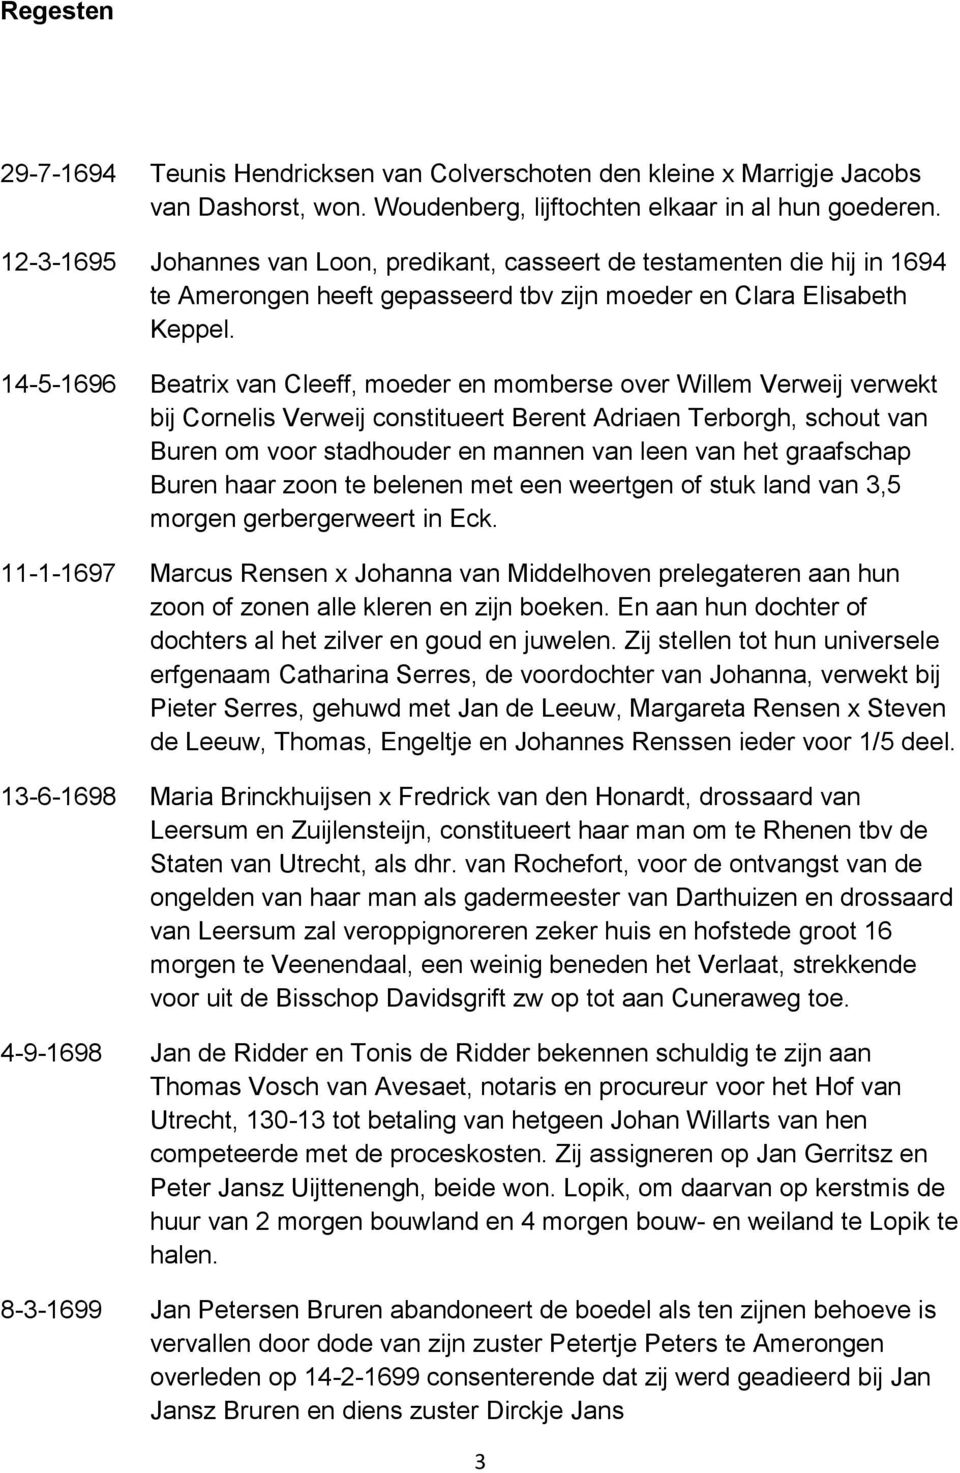 14-5-1696 Beatrix van Cleeff, moeder en momberse over Willem Verweij verwekt bij Cornelis Verweij constitueert Berent Adriaen Terborgh, schout van Buren om voor stadhouder en mannen van leen van het